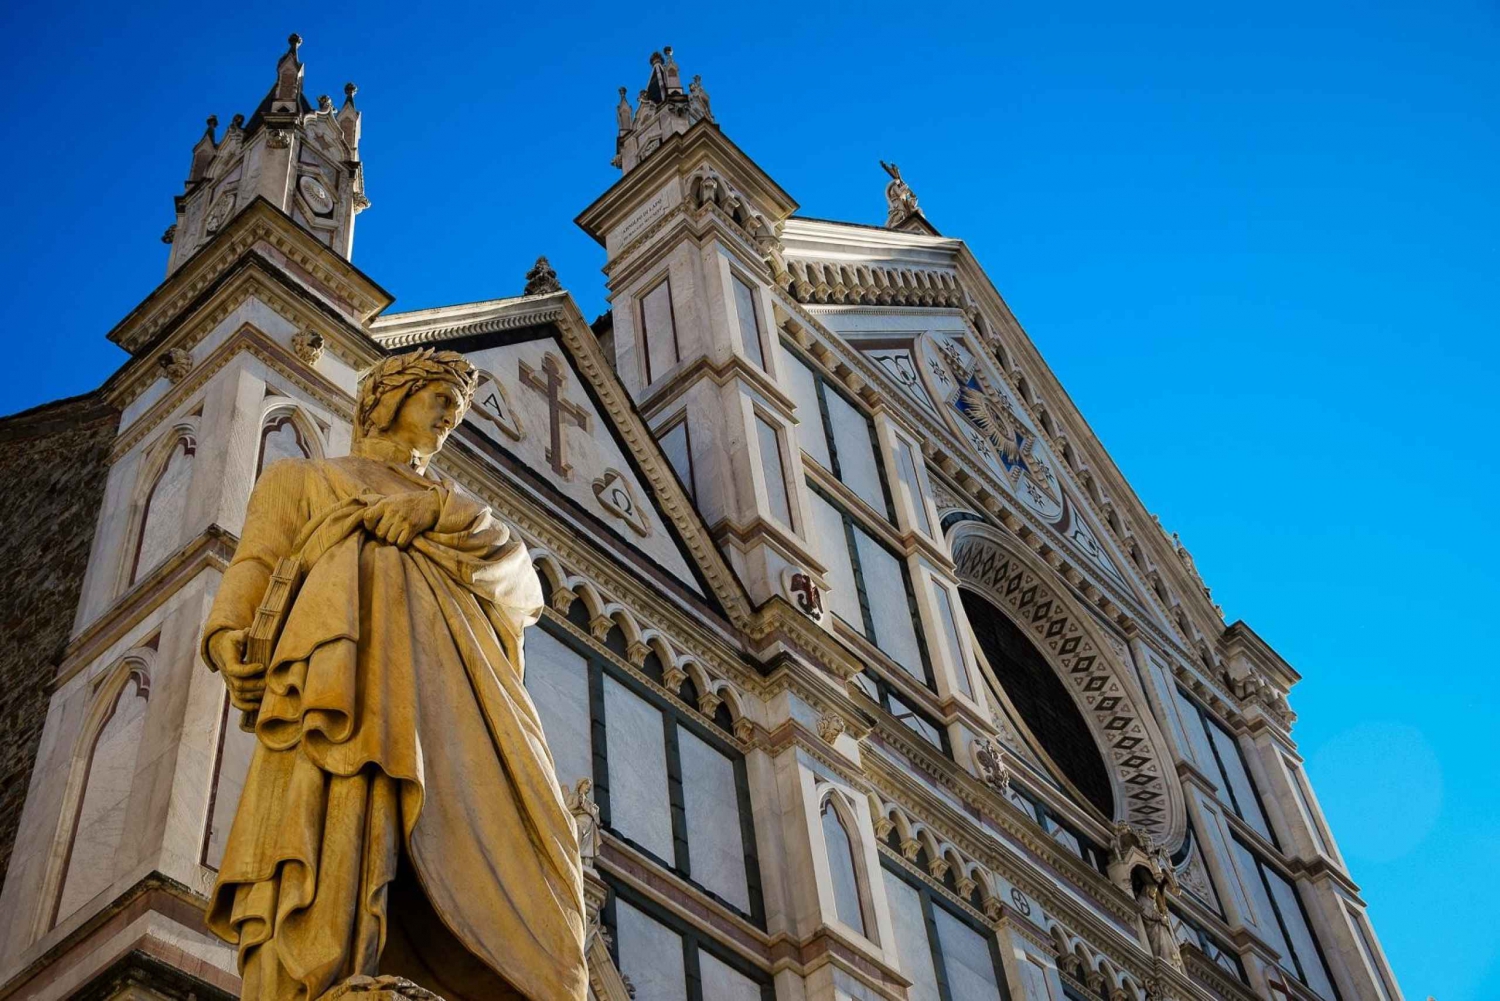 Firenze: Guidet spasertur